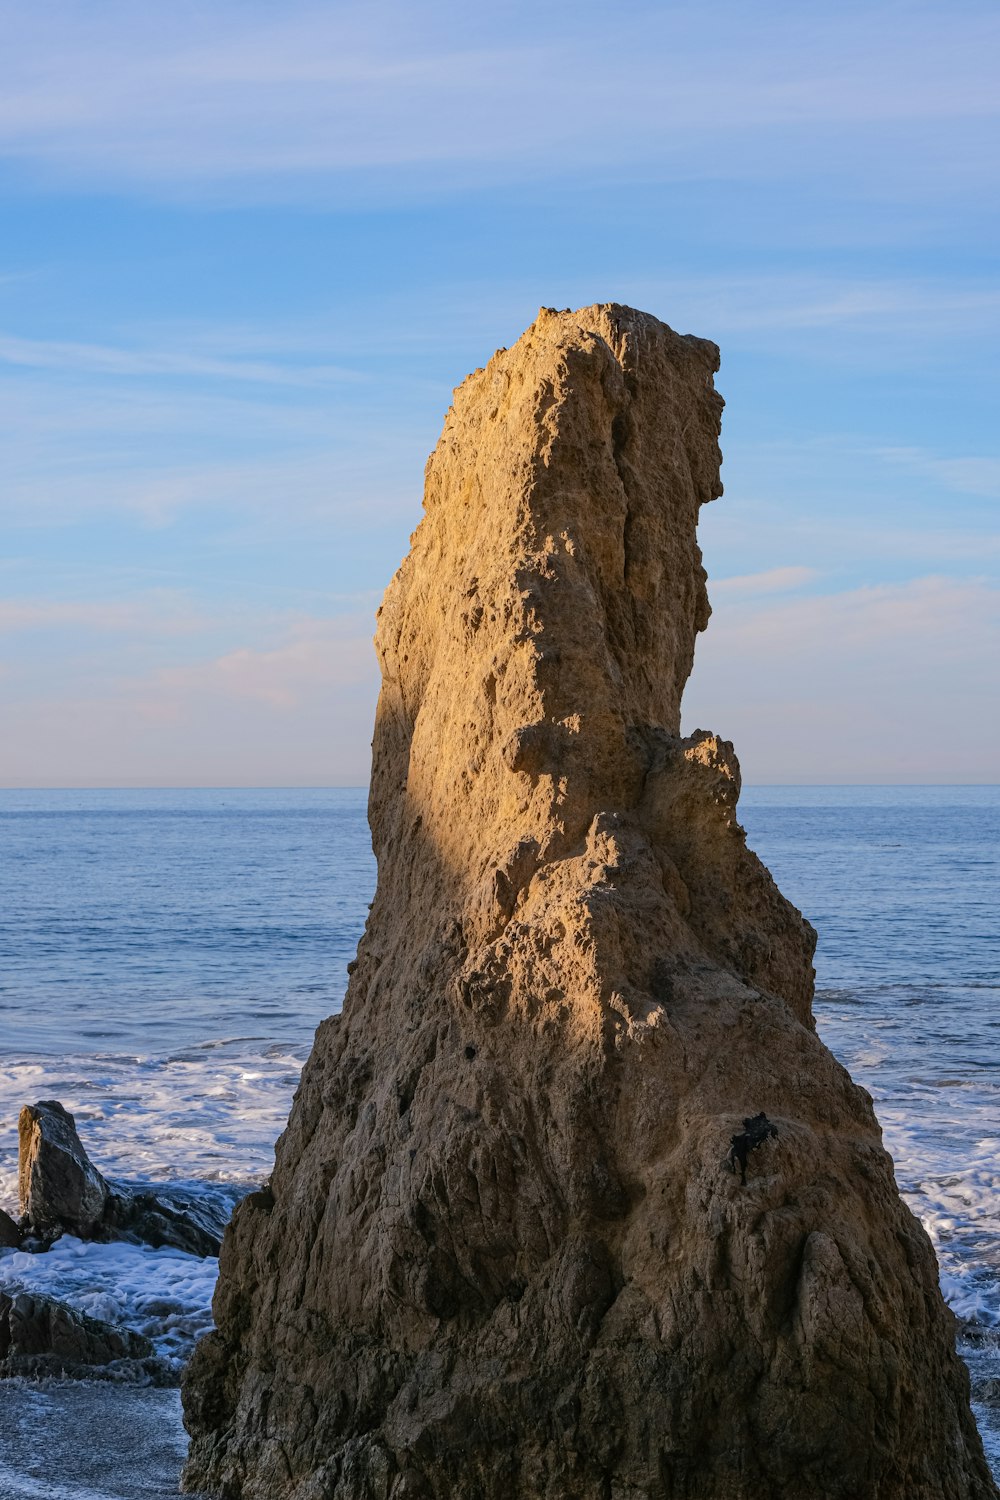 바다 옆 해변 꼭대기에 앉아있는 큰 바위